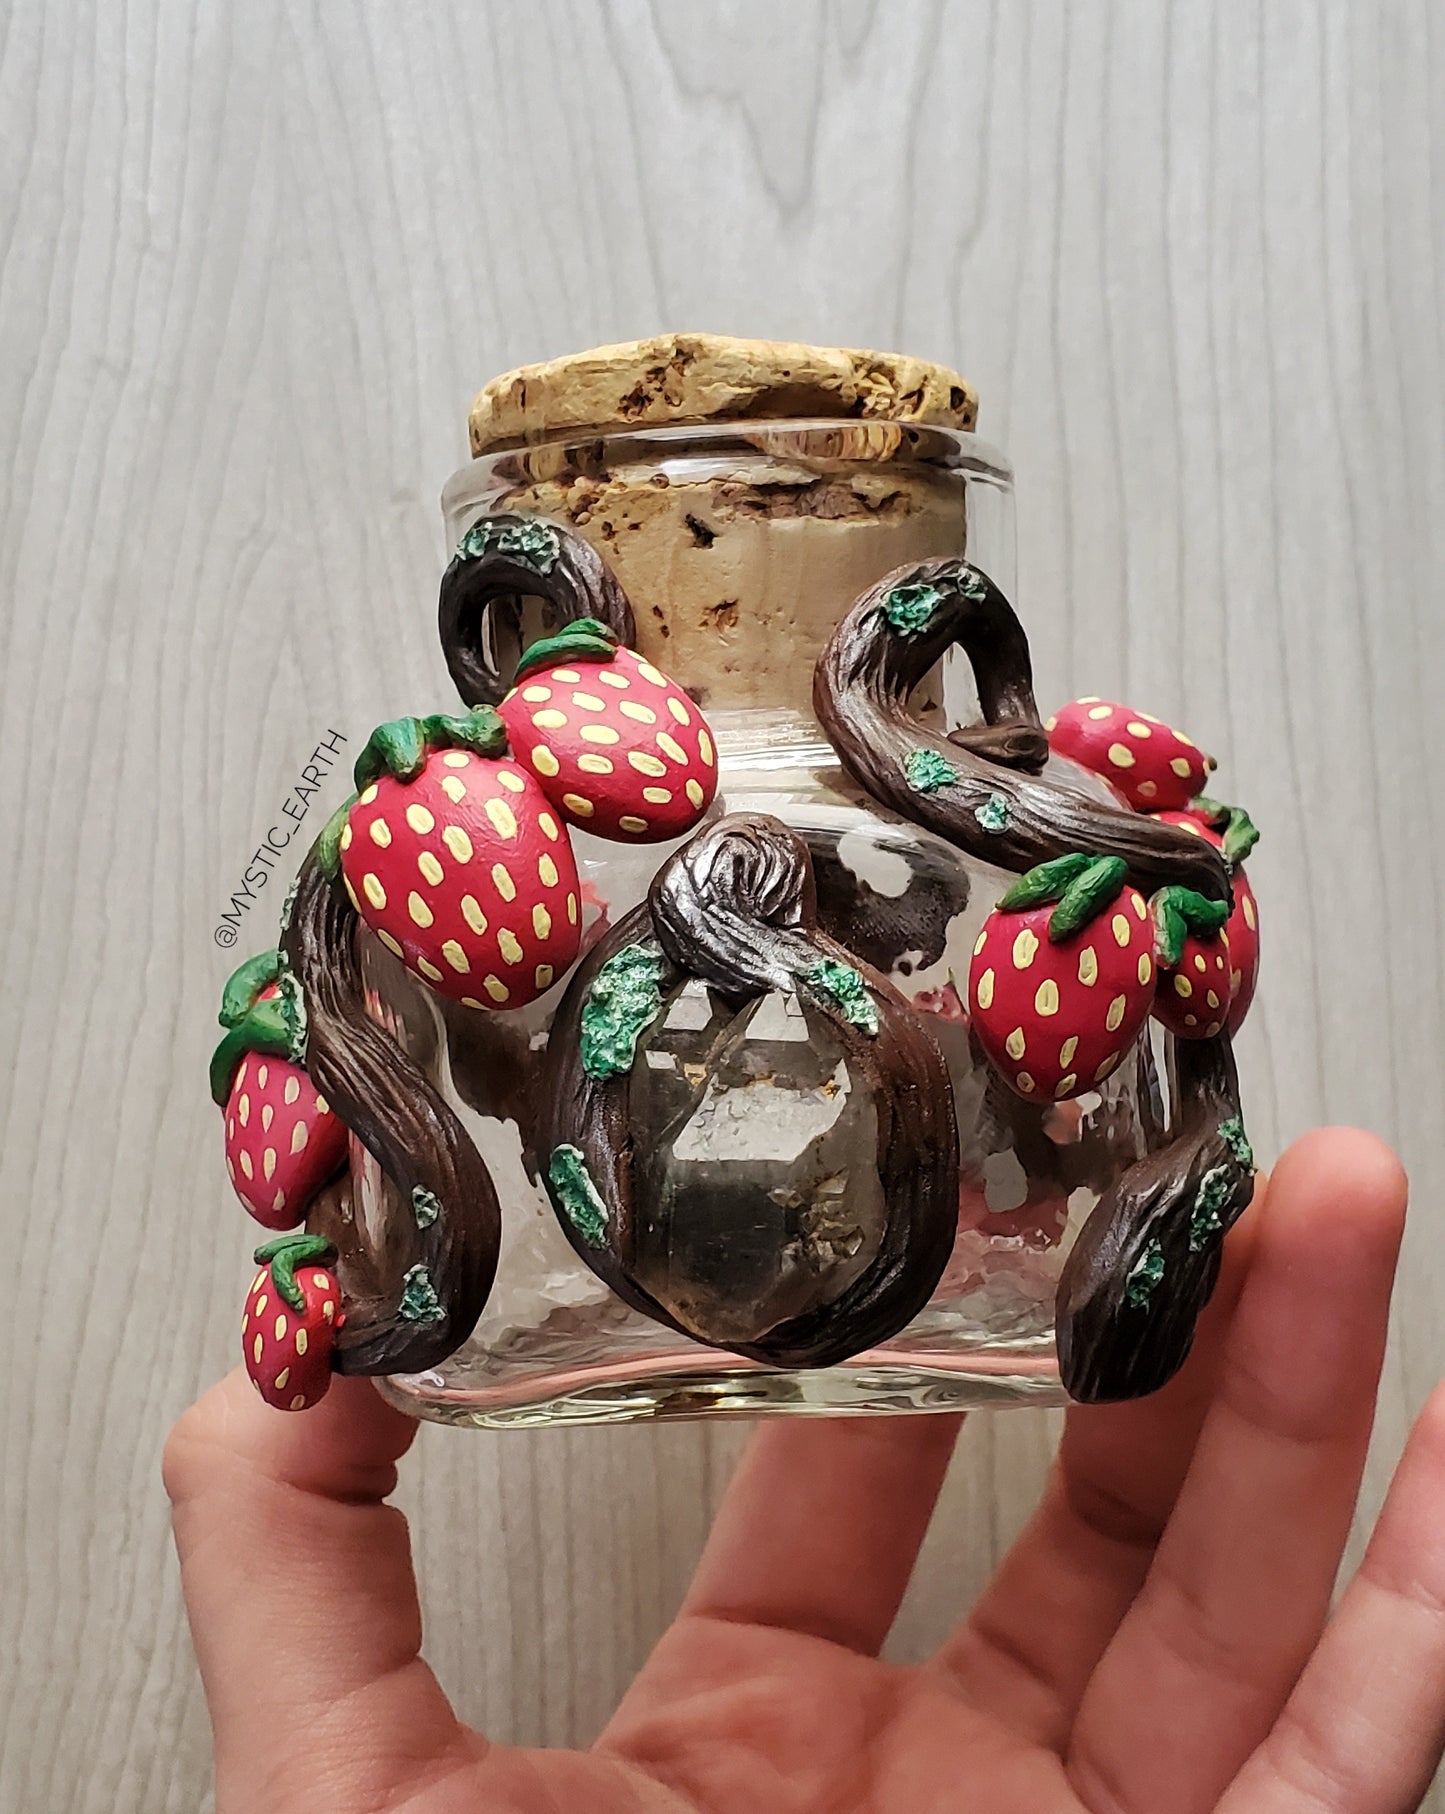 Smoky Quartz Strawberry Vine Jar (Hand Sculpted)